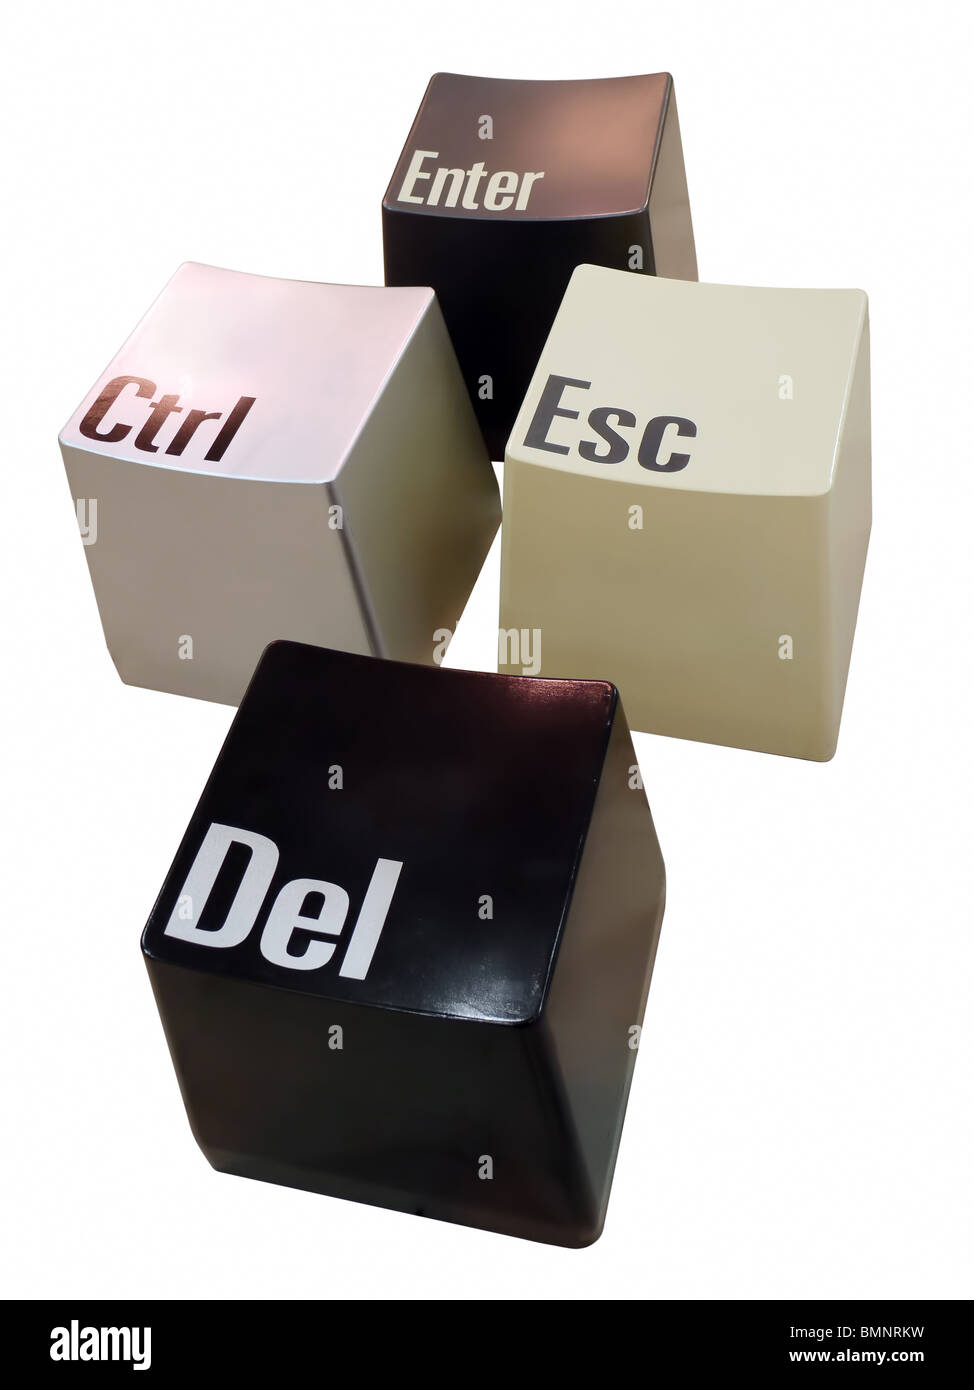 Ctrl, Del, Esc et entrer les touches du clavier isolated on white Banque D'Images